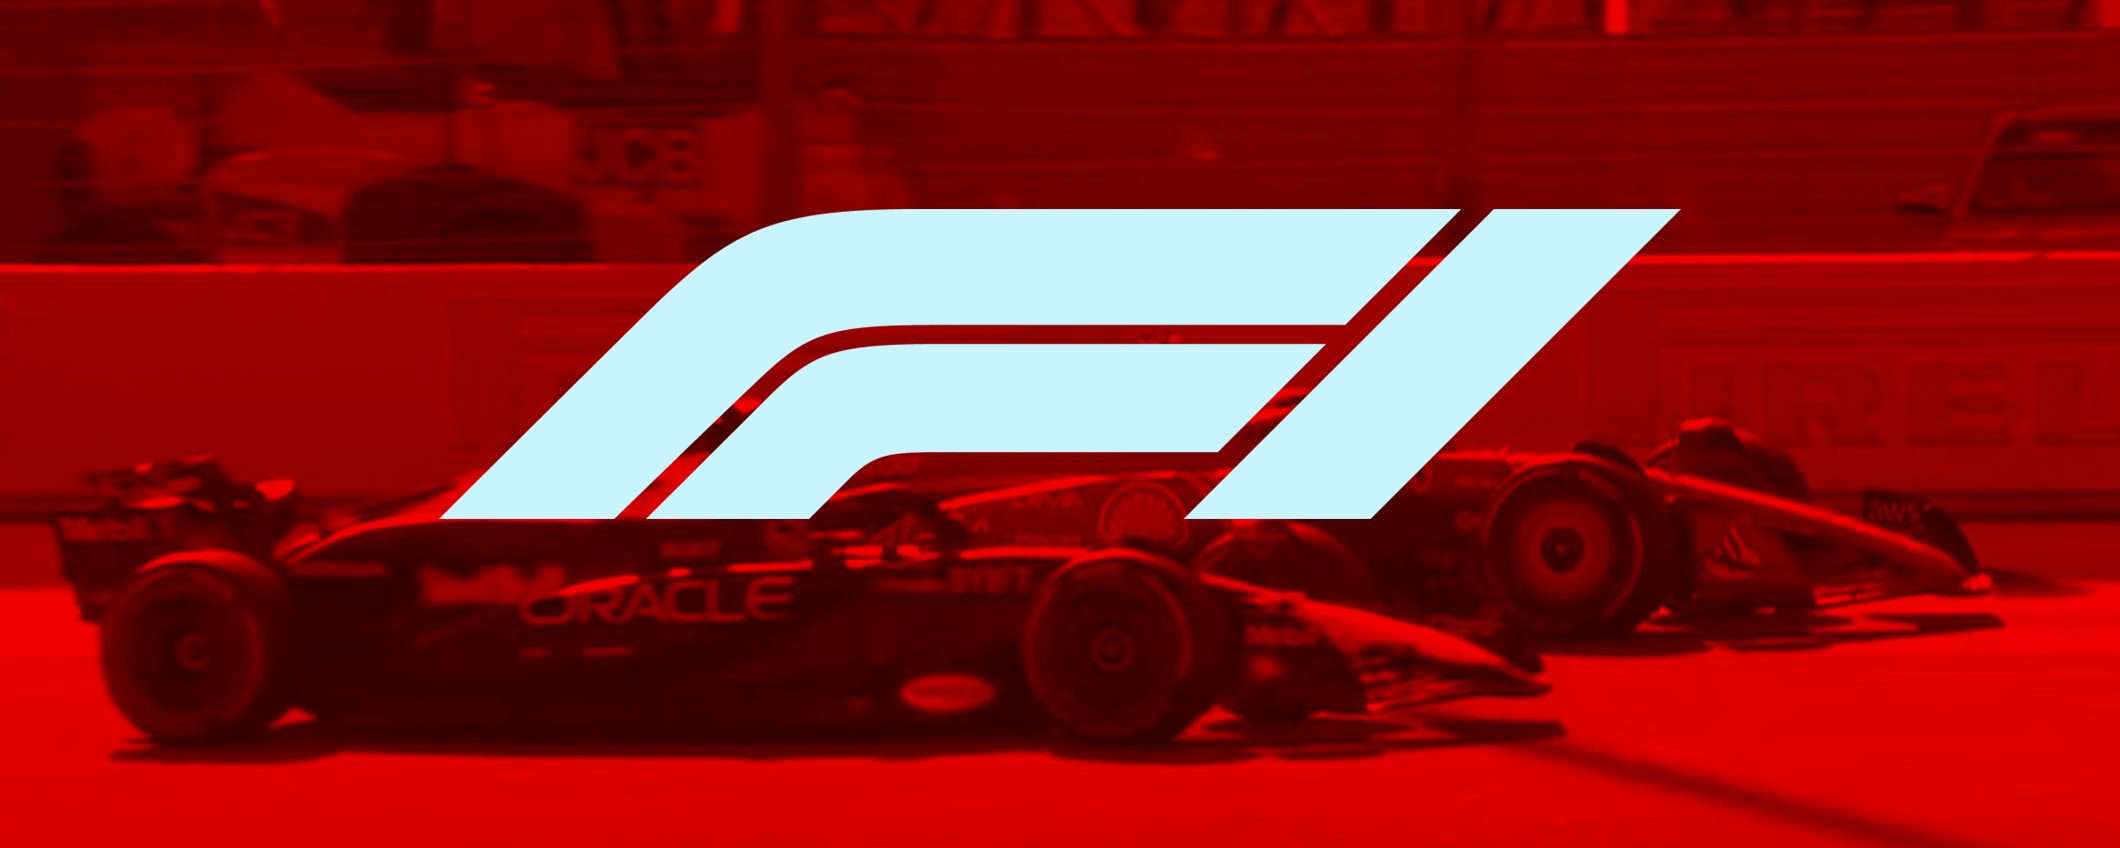 Come vedere F1 Bahrain in diretta streaming dall'Italia